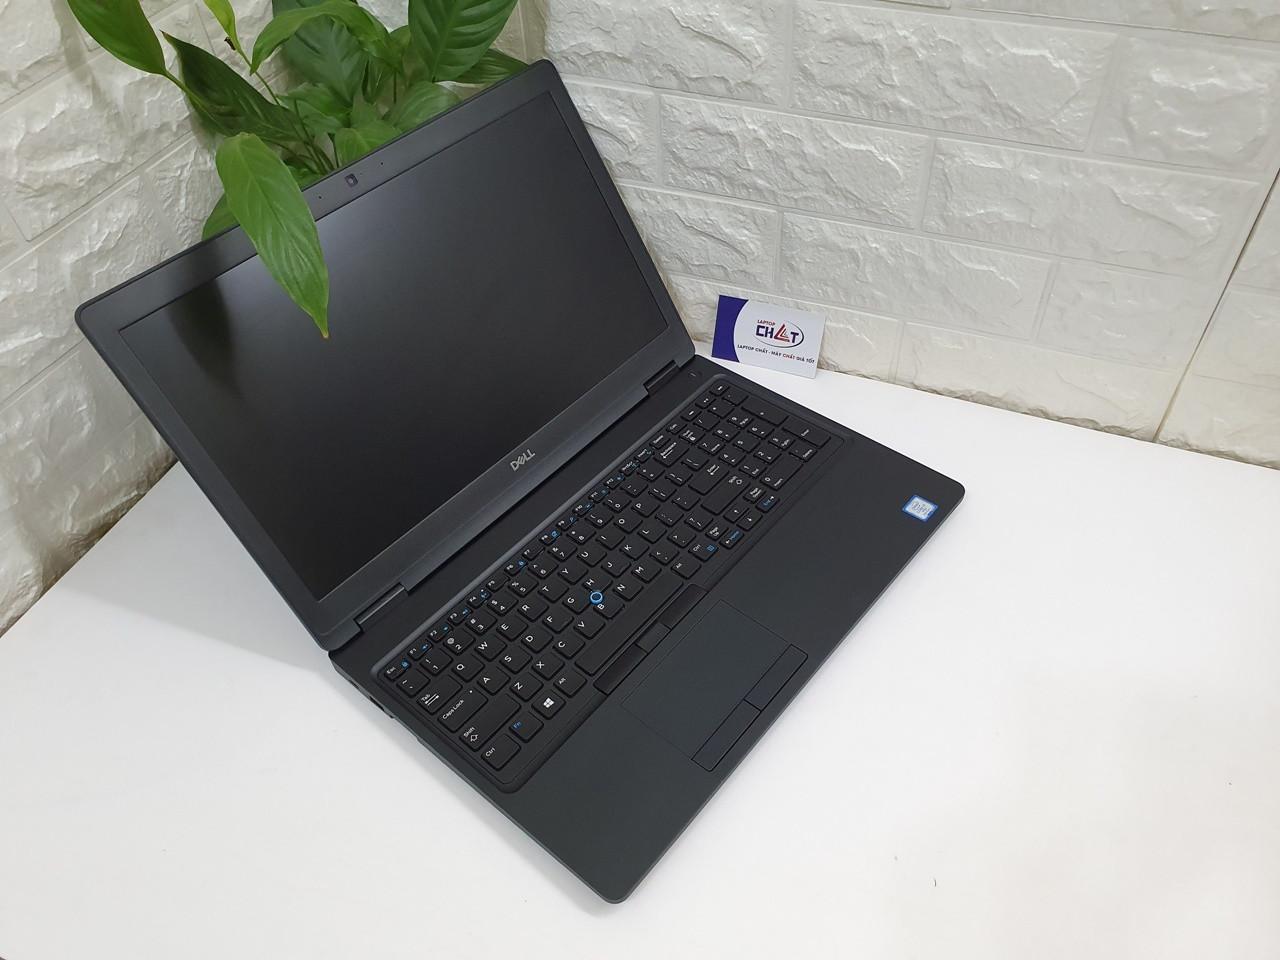 Laptop Dell Precision 3520